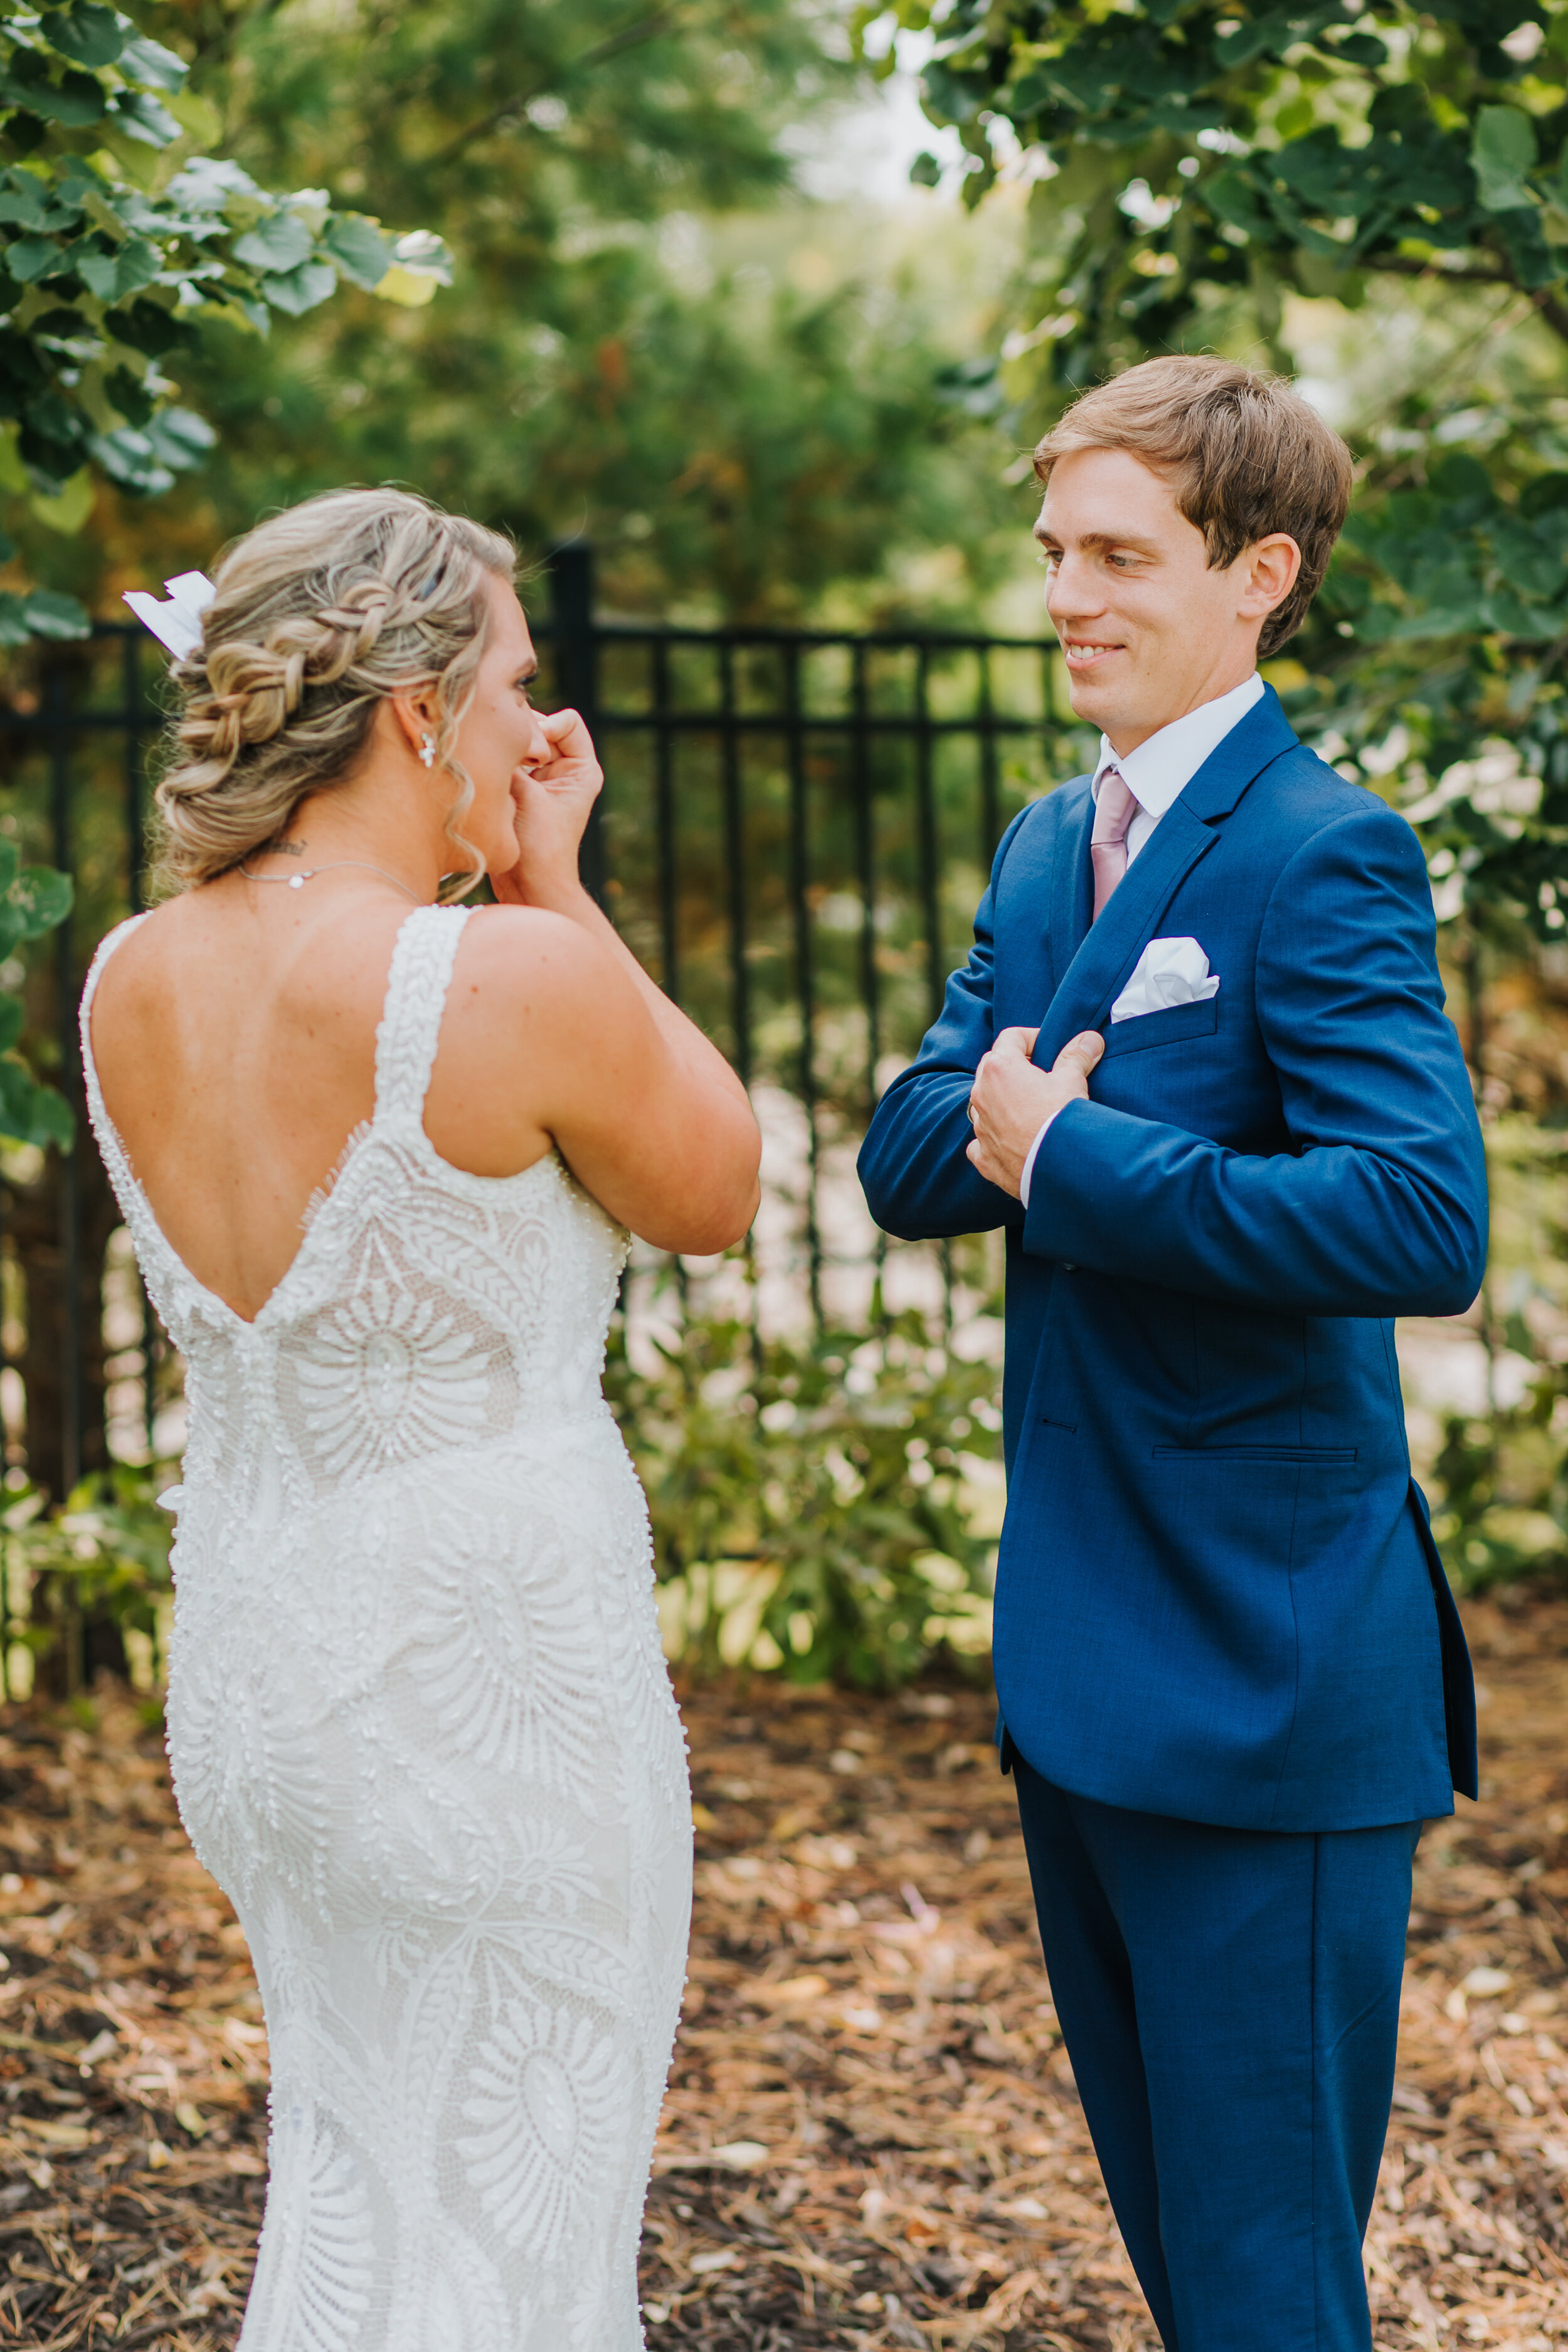 Ashton & Dan - Married - Nathaniel Jensen Photography - Omaha Nebraska Wedding Photographer-119.jpg